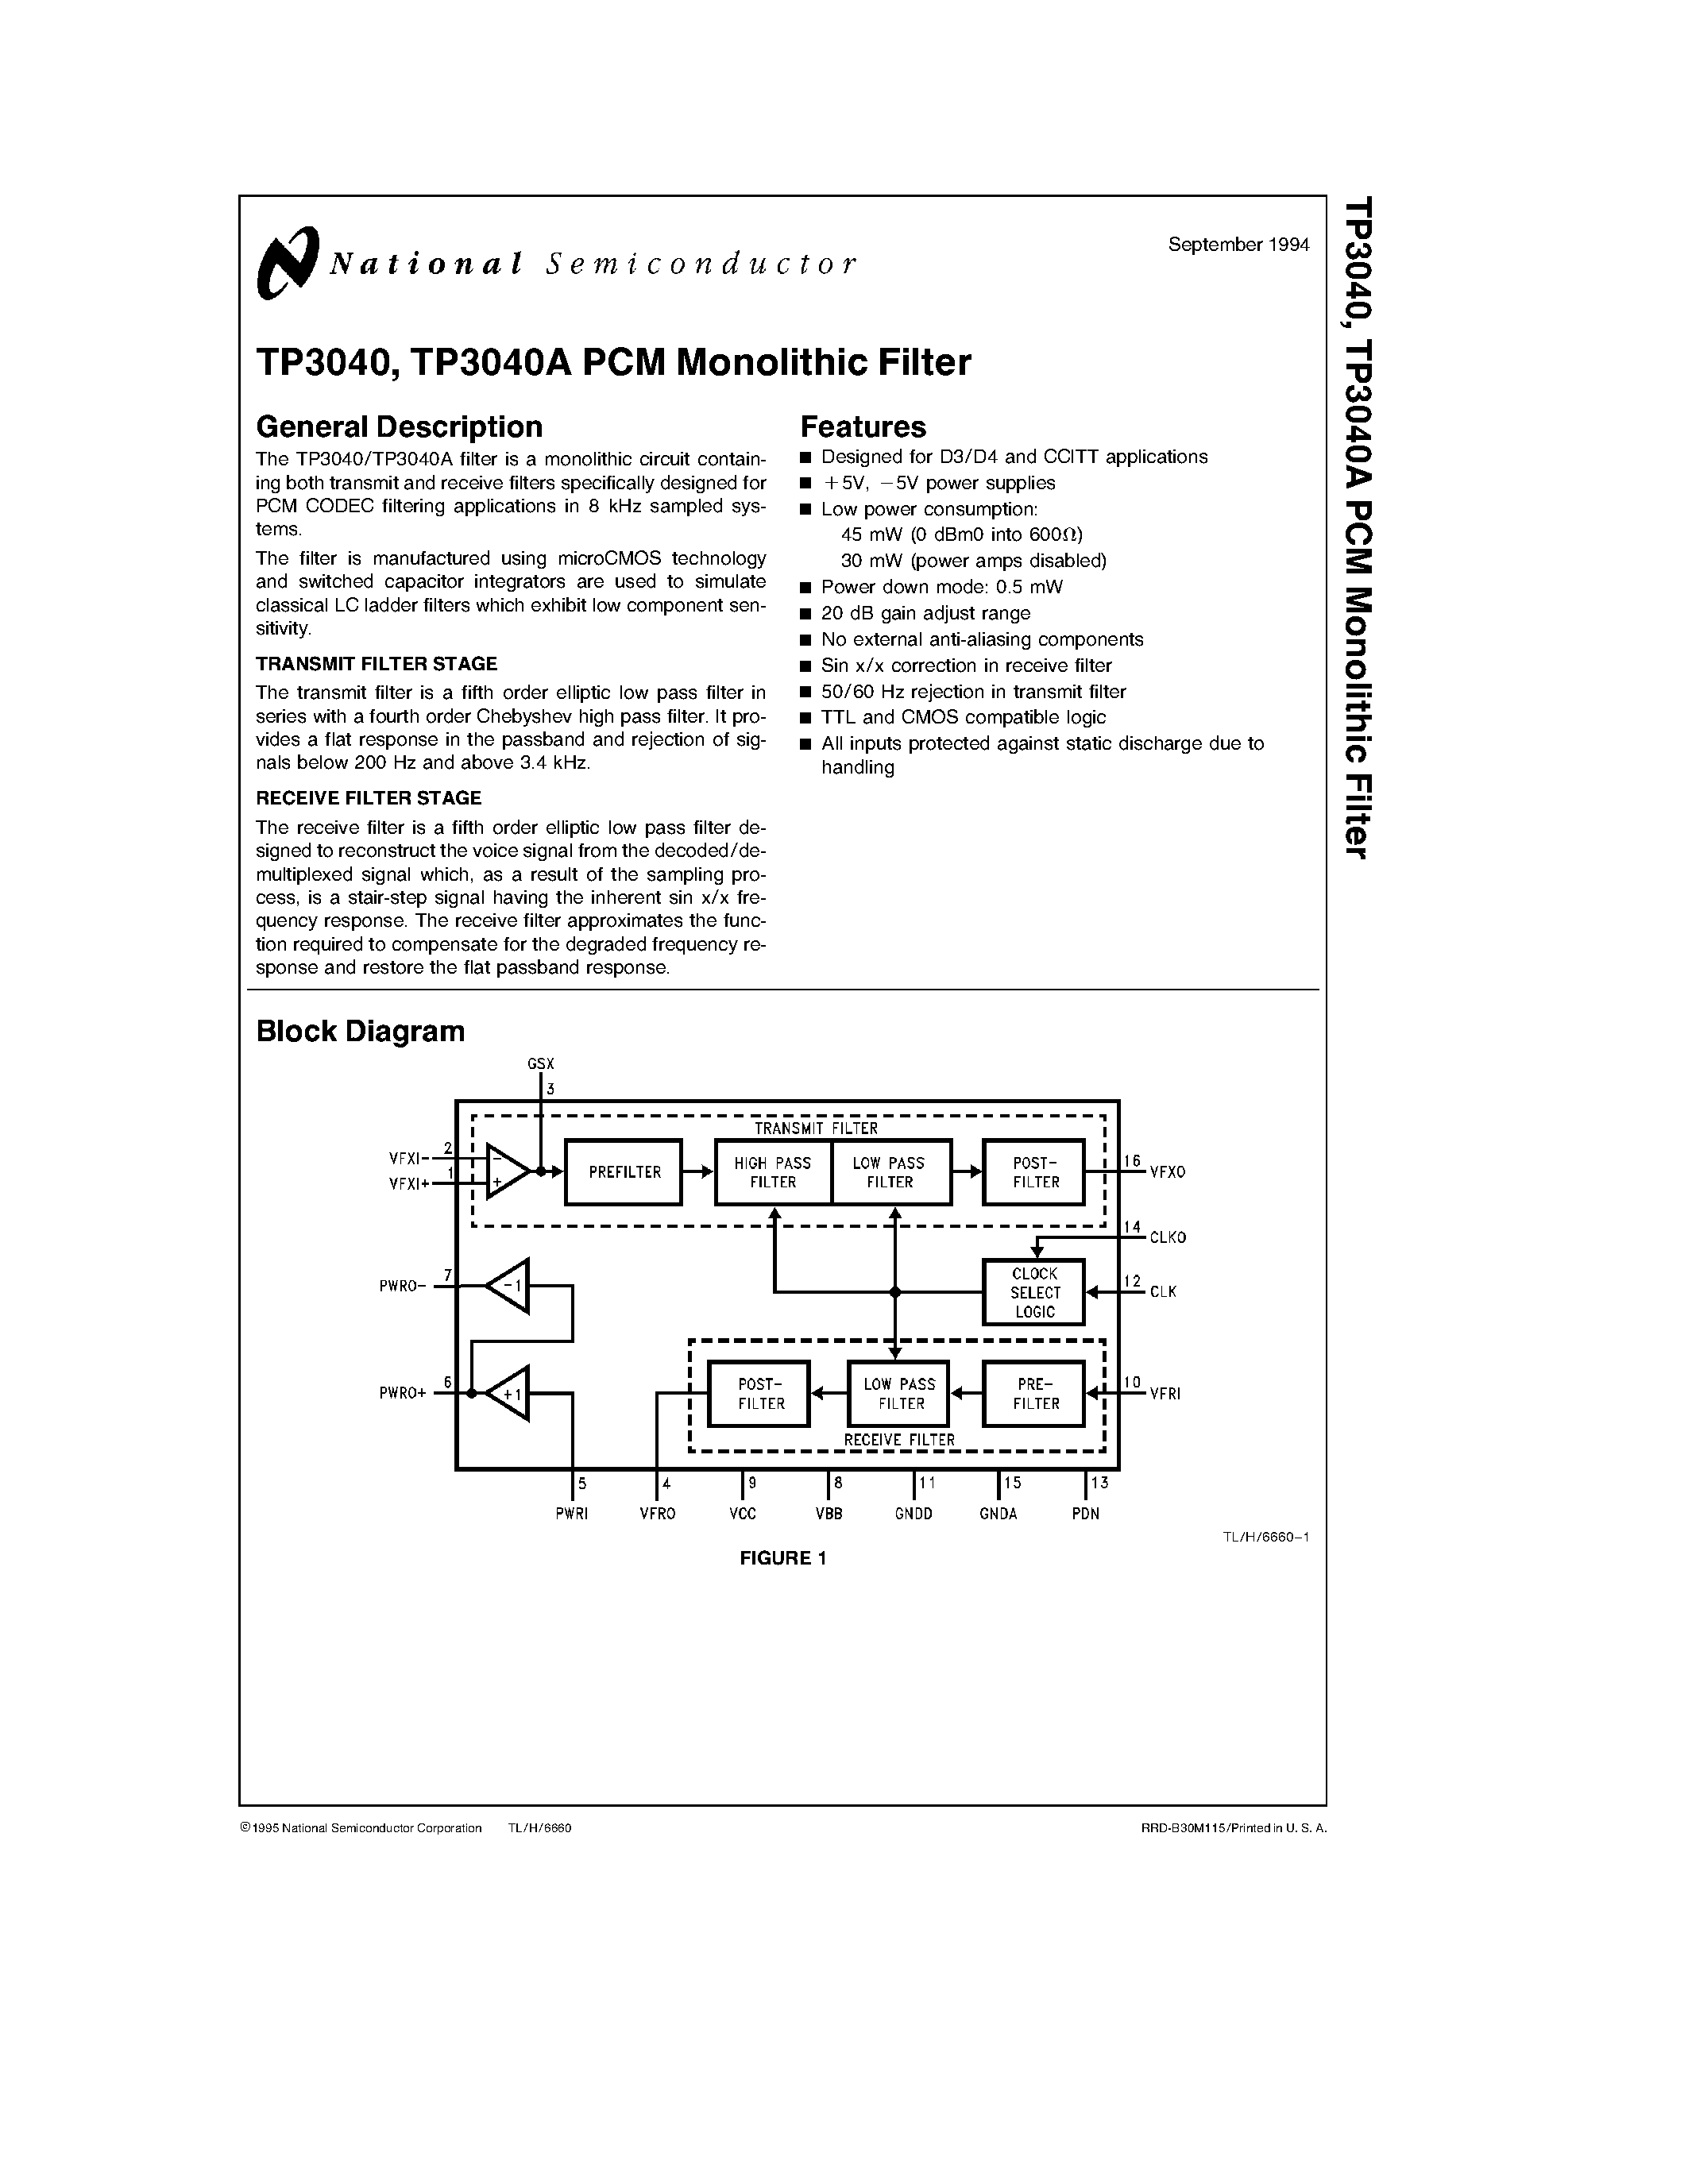 Даташит TP3040 - TP3040/ TP3040A PCM Monolithic Filter страница 1